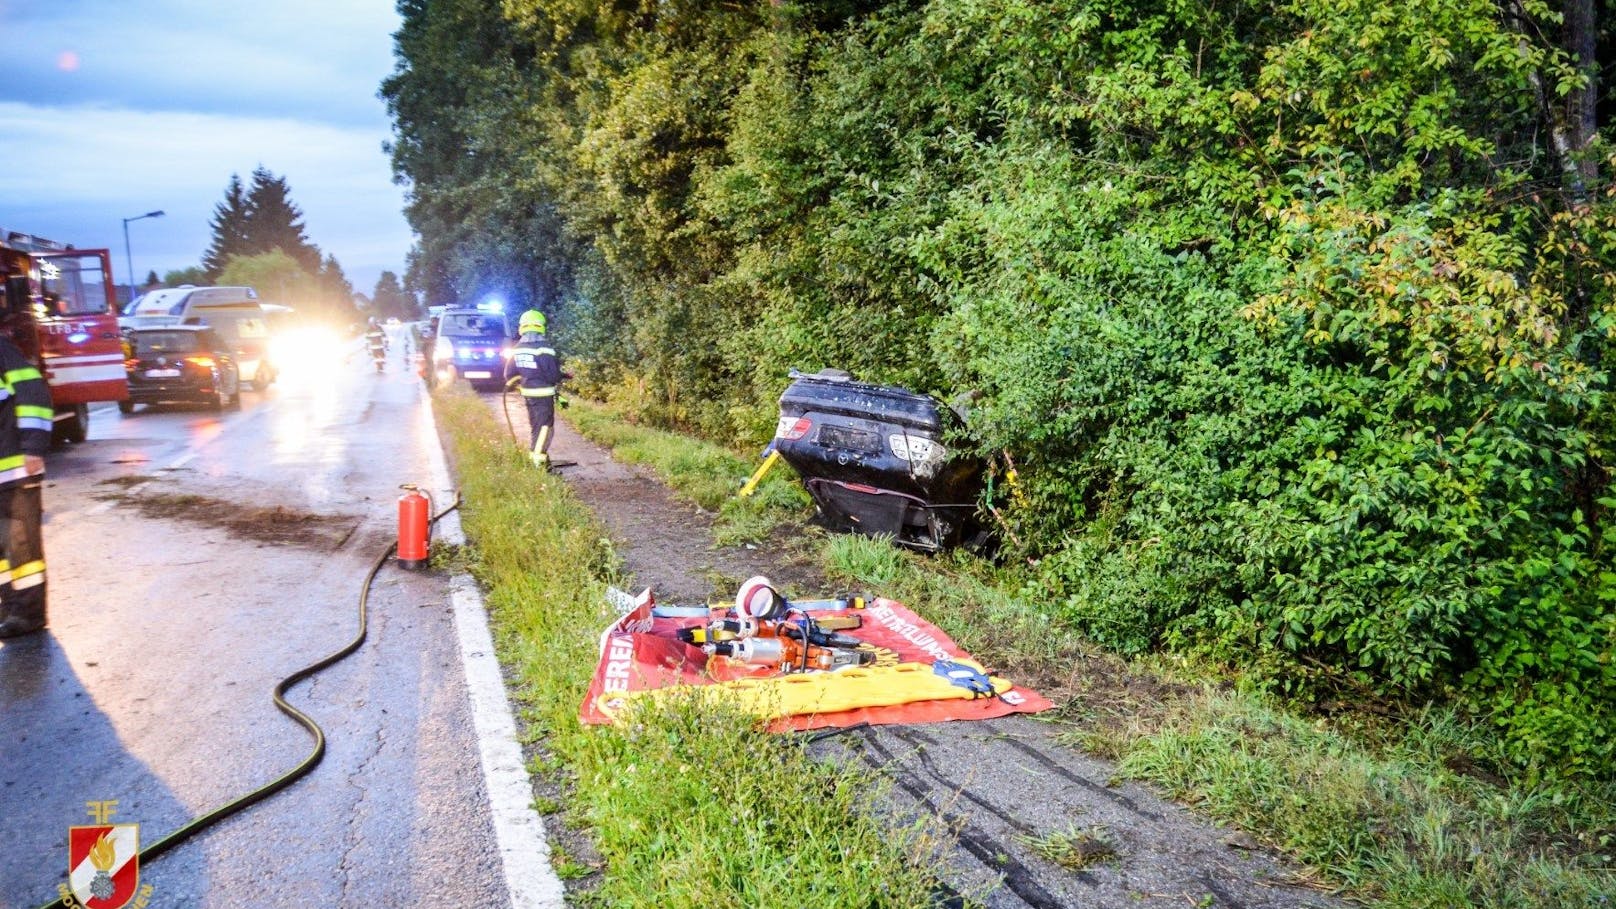 Sonntagfrüh kam ein 21-jähriger Mercedes-Fahrer mit weit überhöhter Geschwindigkeit von der Fahrbahn ab. Fünf Personen wurden zum Teil schwer verletzt.